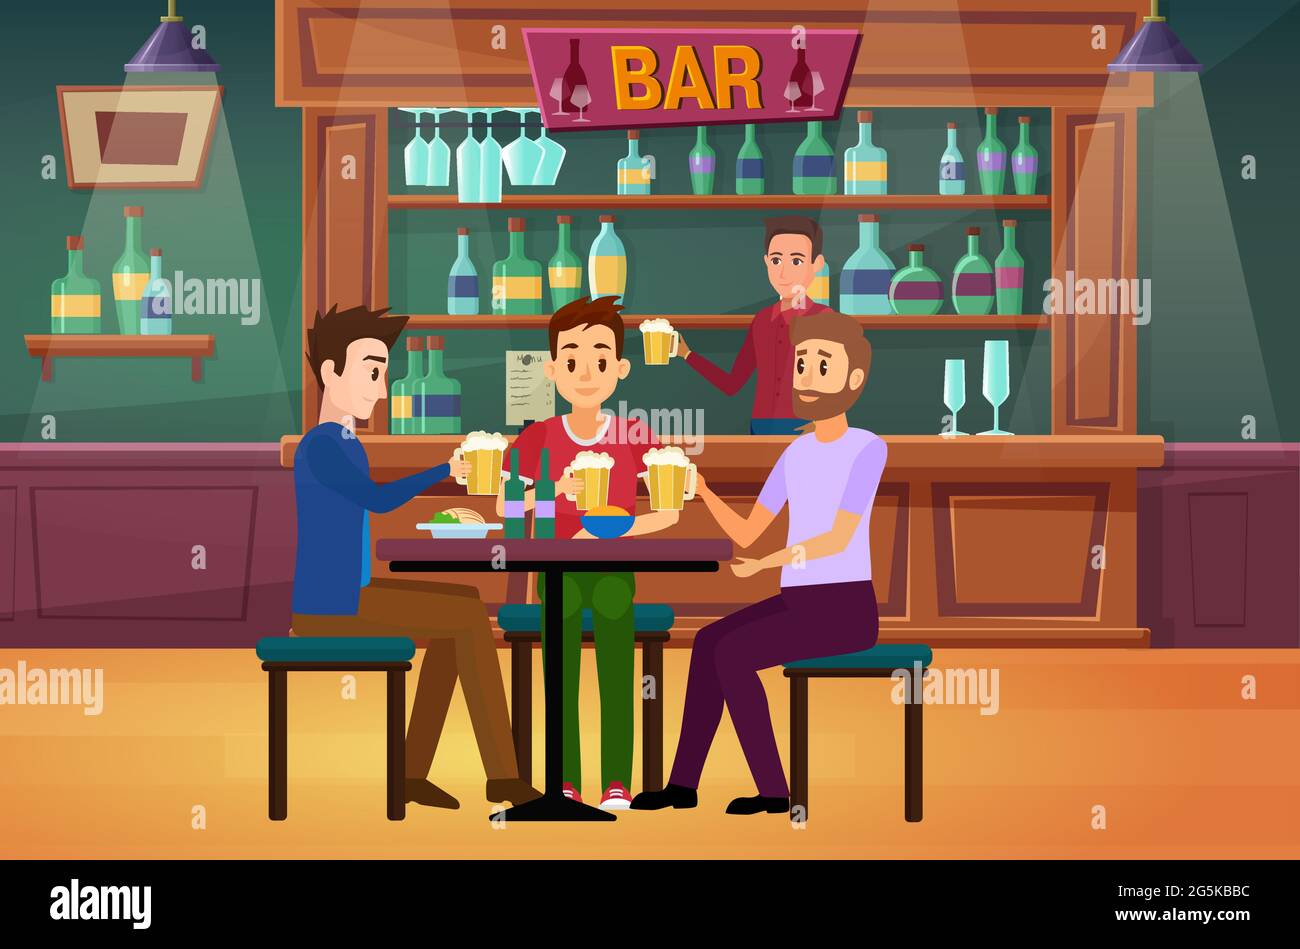 Des amis boivent de la bière au bar ou dans un pub. Caricature joyeux jeune homme personnages tenant des verres à bière, les gars buvant, s'amusant, barman derrière le comptoir dans le fond intérieur du restaurant Illustration de Vecteur